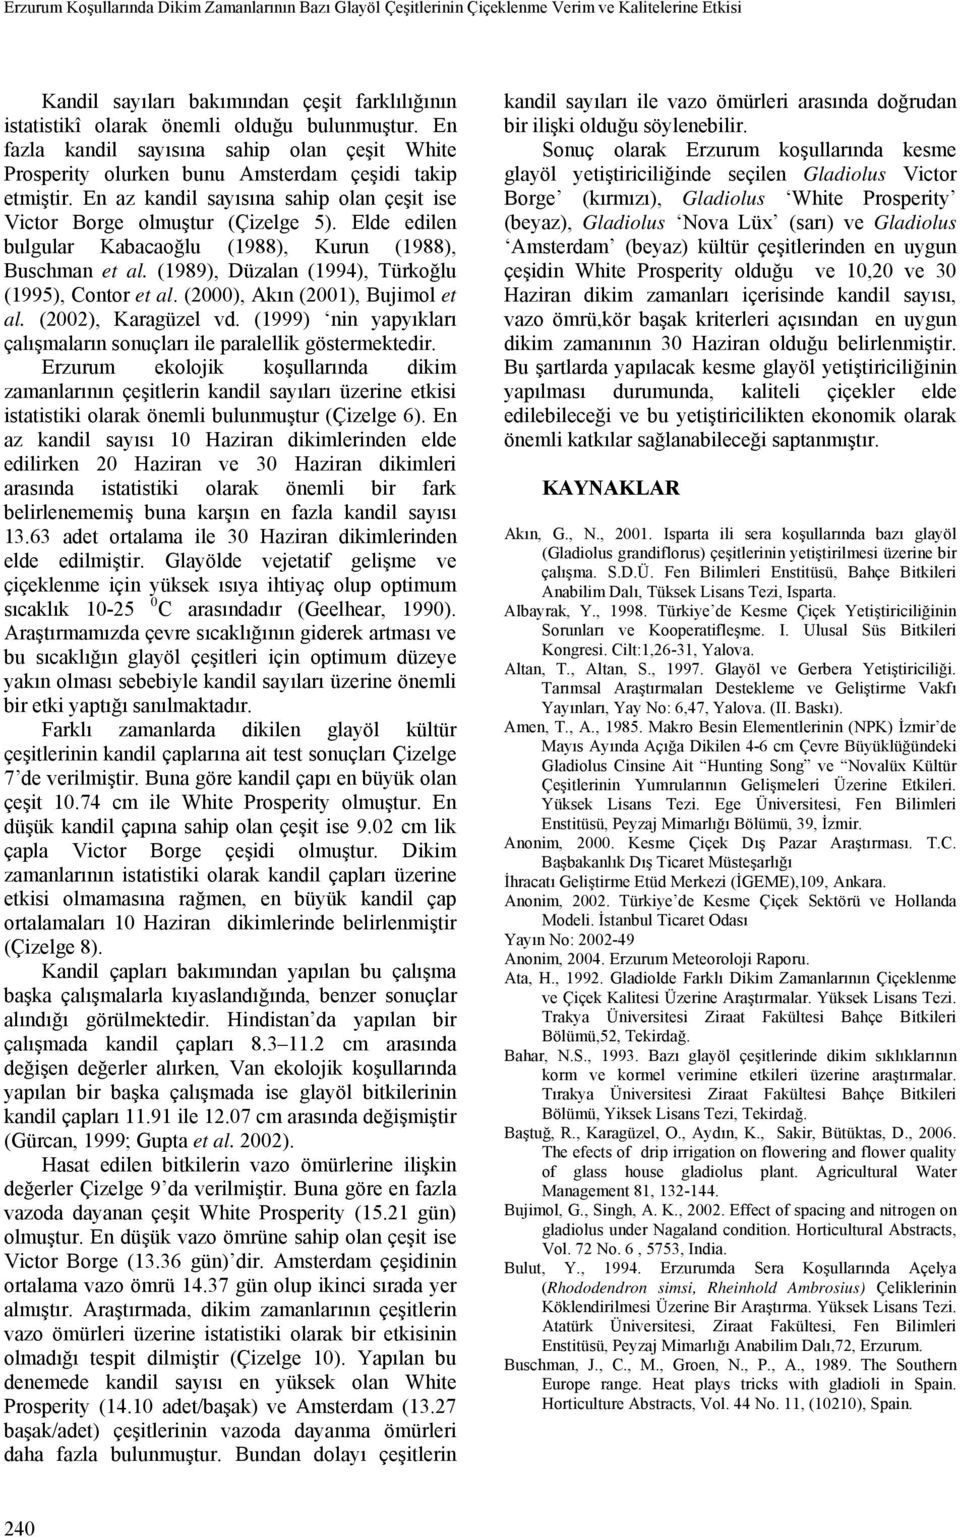 Elde edilen bulgular Kabacaoğlu (1988), Kurun (1988), Buschman et al. (1989), Düzalan (1994), Türkoğlu (1995), Contor et al. (2000), Akın (2001), Bujimol et al. (2002), Karagüzel vd.